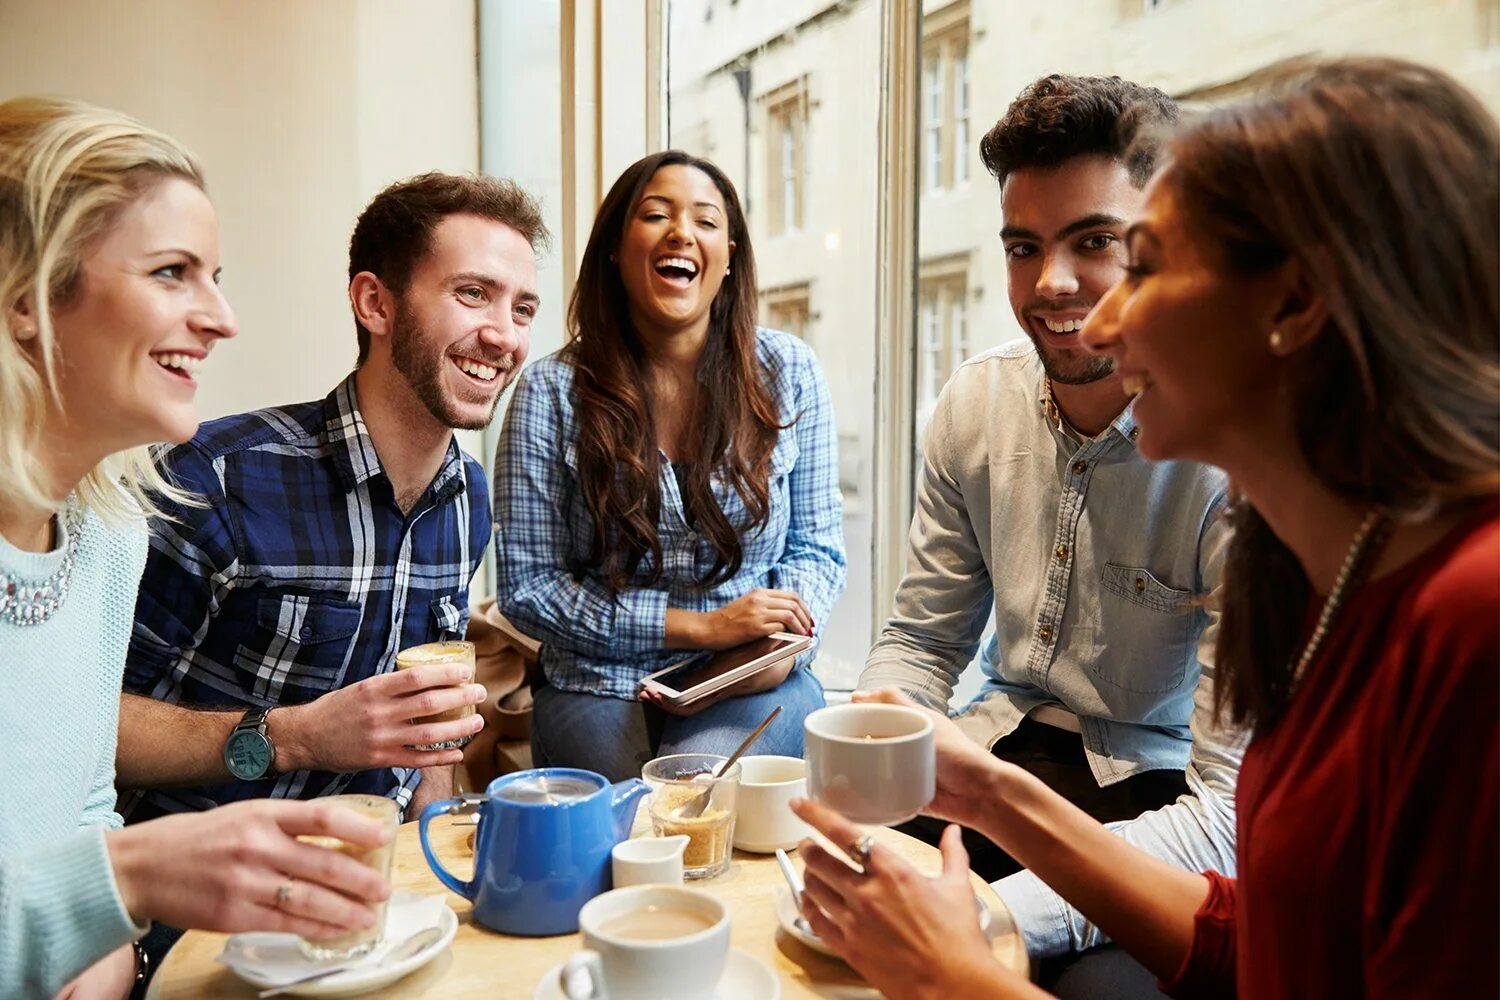 People get around. Молодежь в кофейне. Люди в кофейне. Общение с друзьями. Люди пьют кофе в кафе.